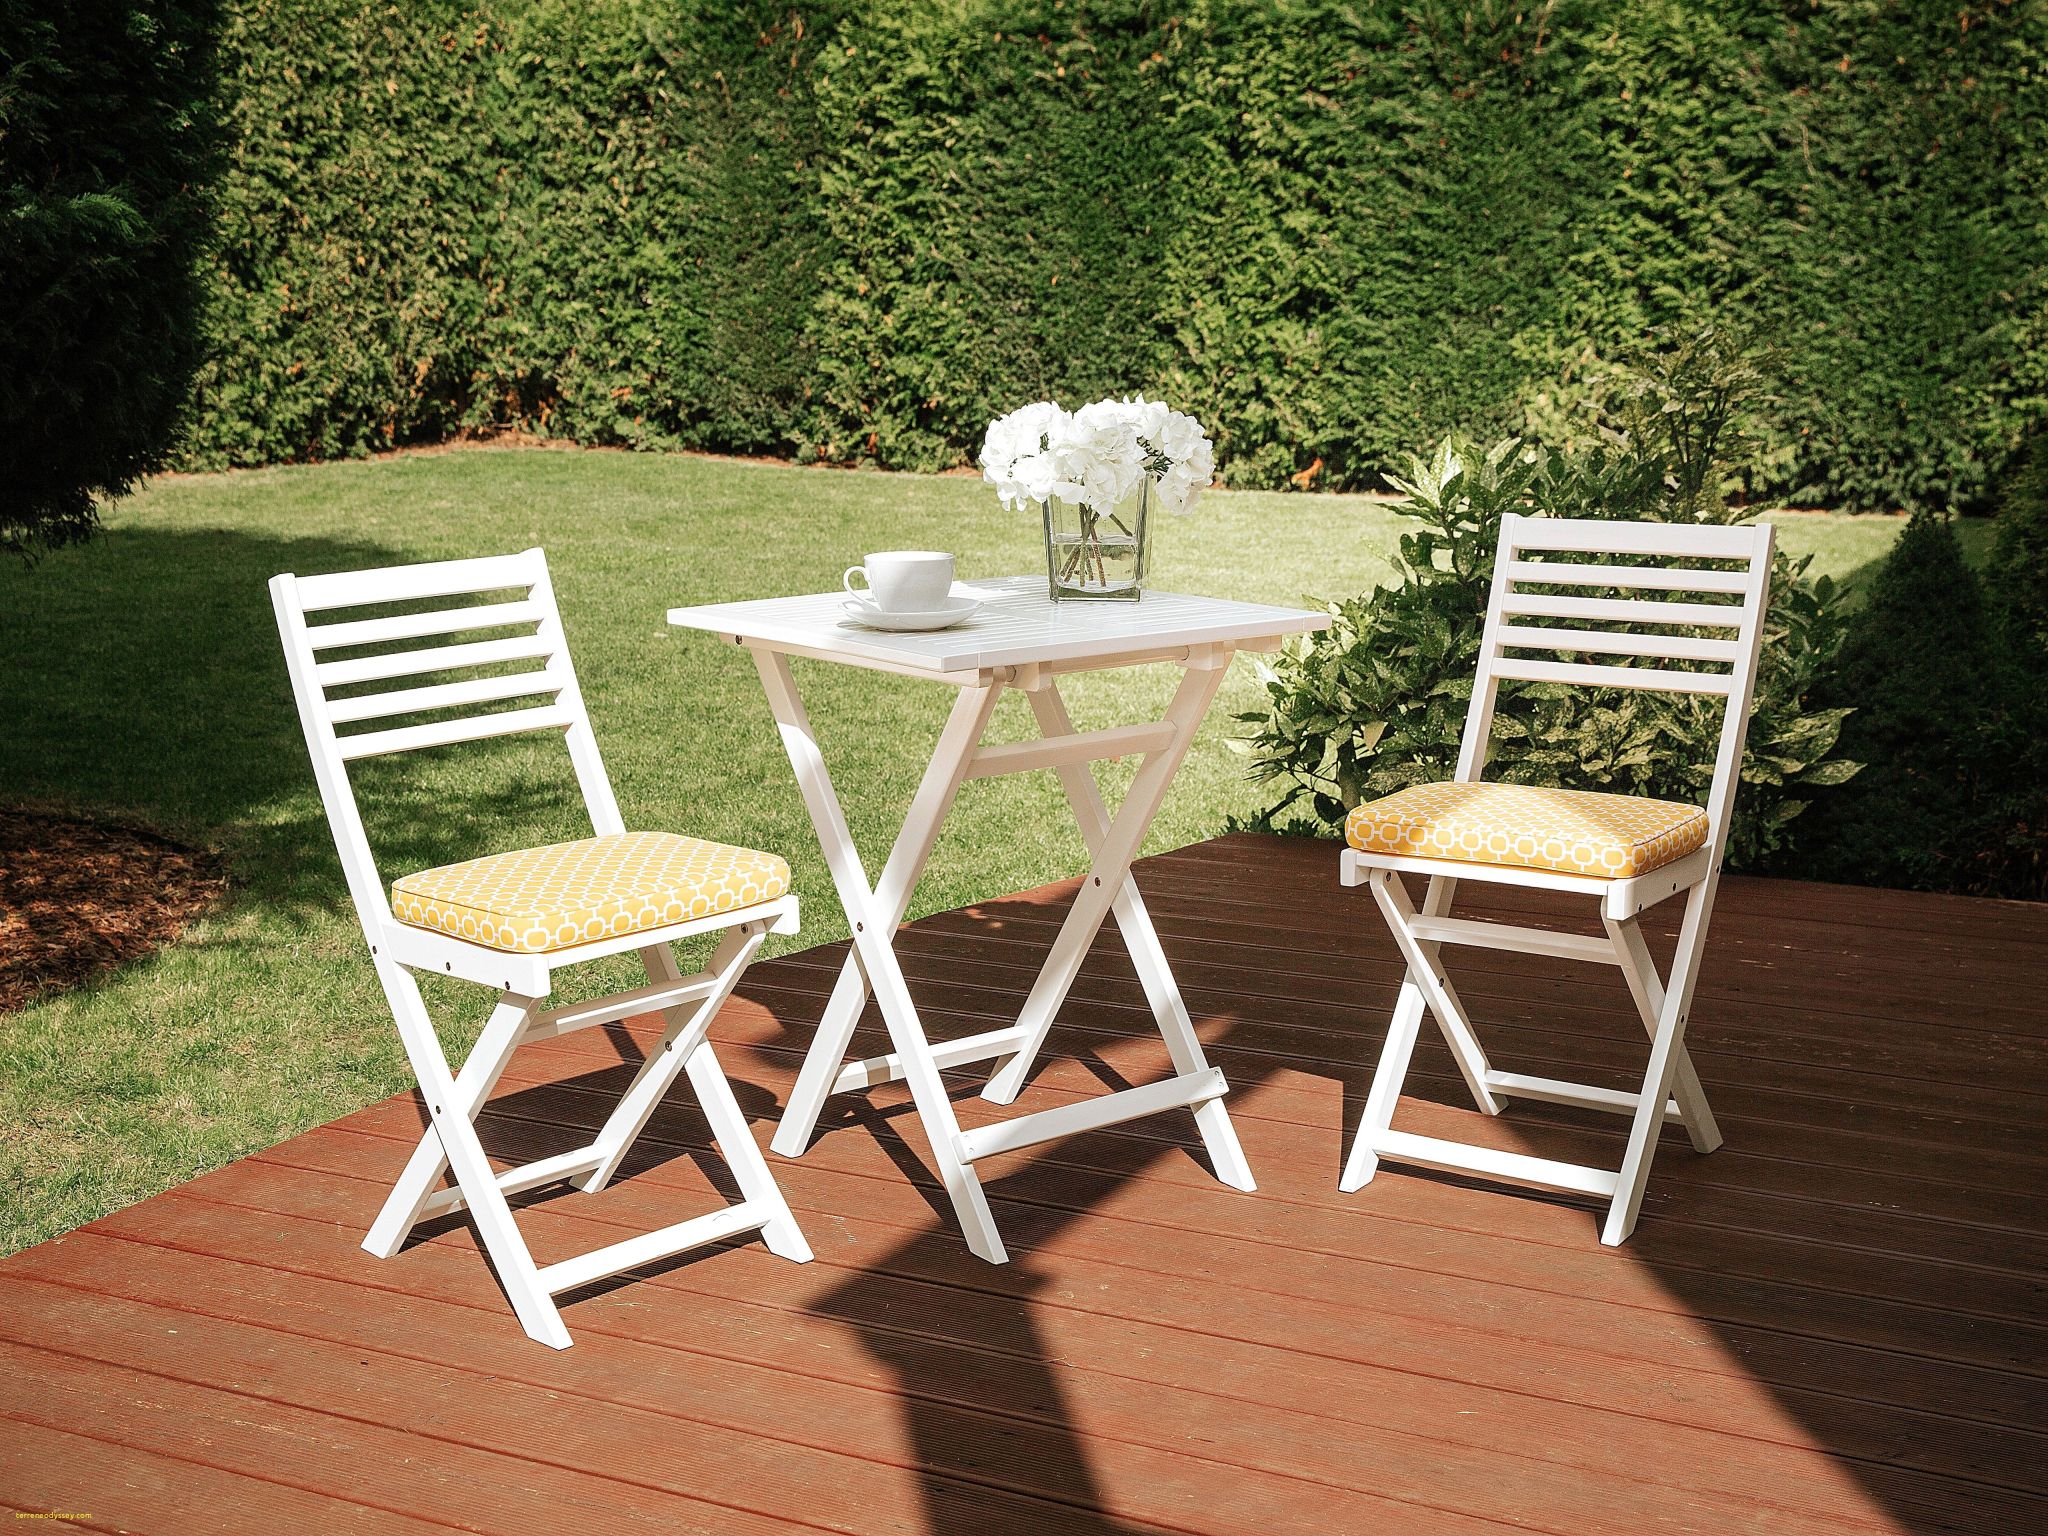 chaises de jardin soldes ainsi que resultat superieur 70 luxe chaise cuisine aluminium pic 2018 hzt6 de chaises de jardin soldes